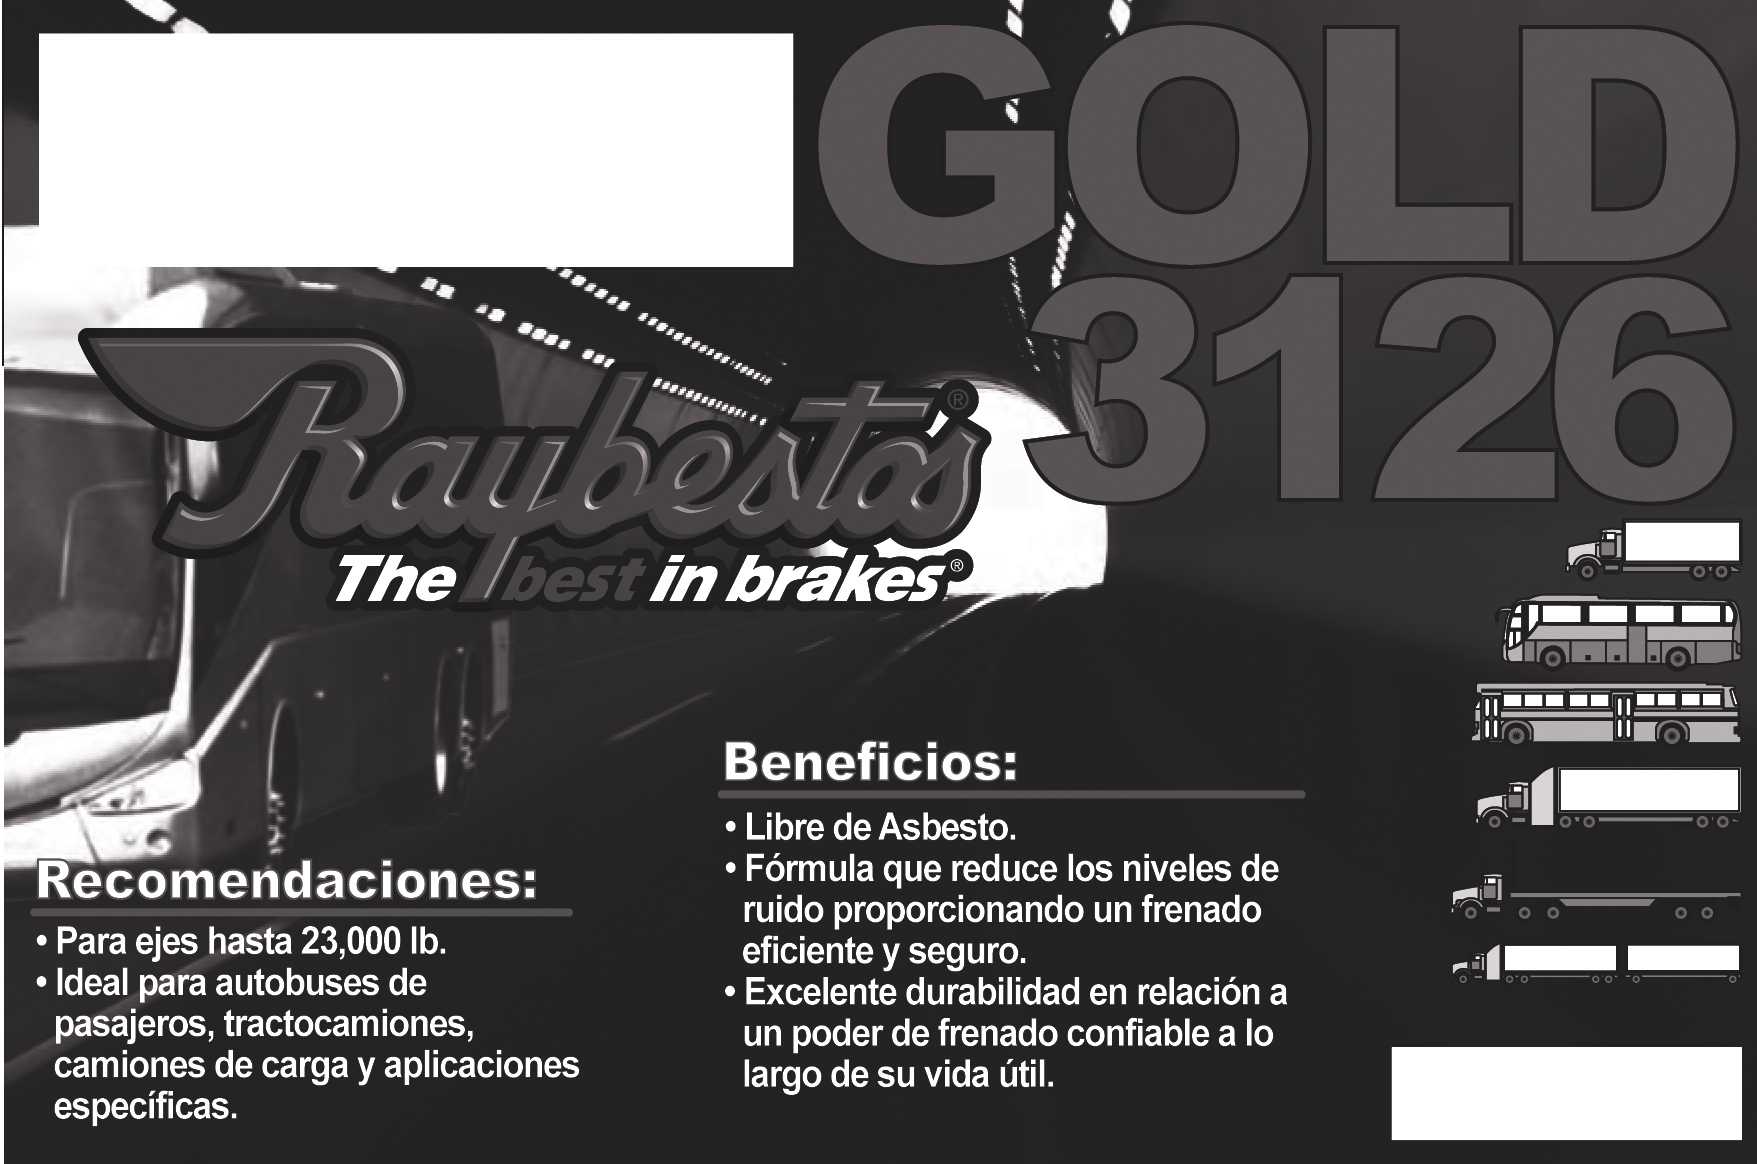 GOLD 3126 Formulación: La fórmula Raybestos Gold 3126 proporciona estabilidad y confort al frenar optimizando su desempeño en frenadas de emergencia.